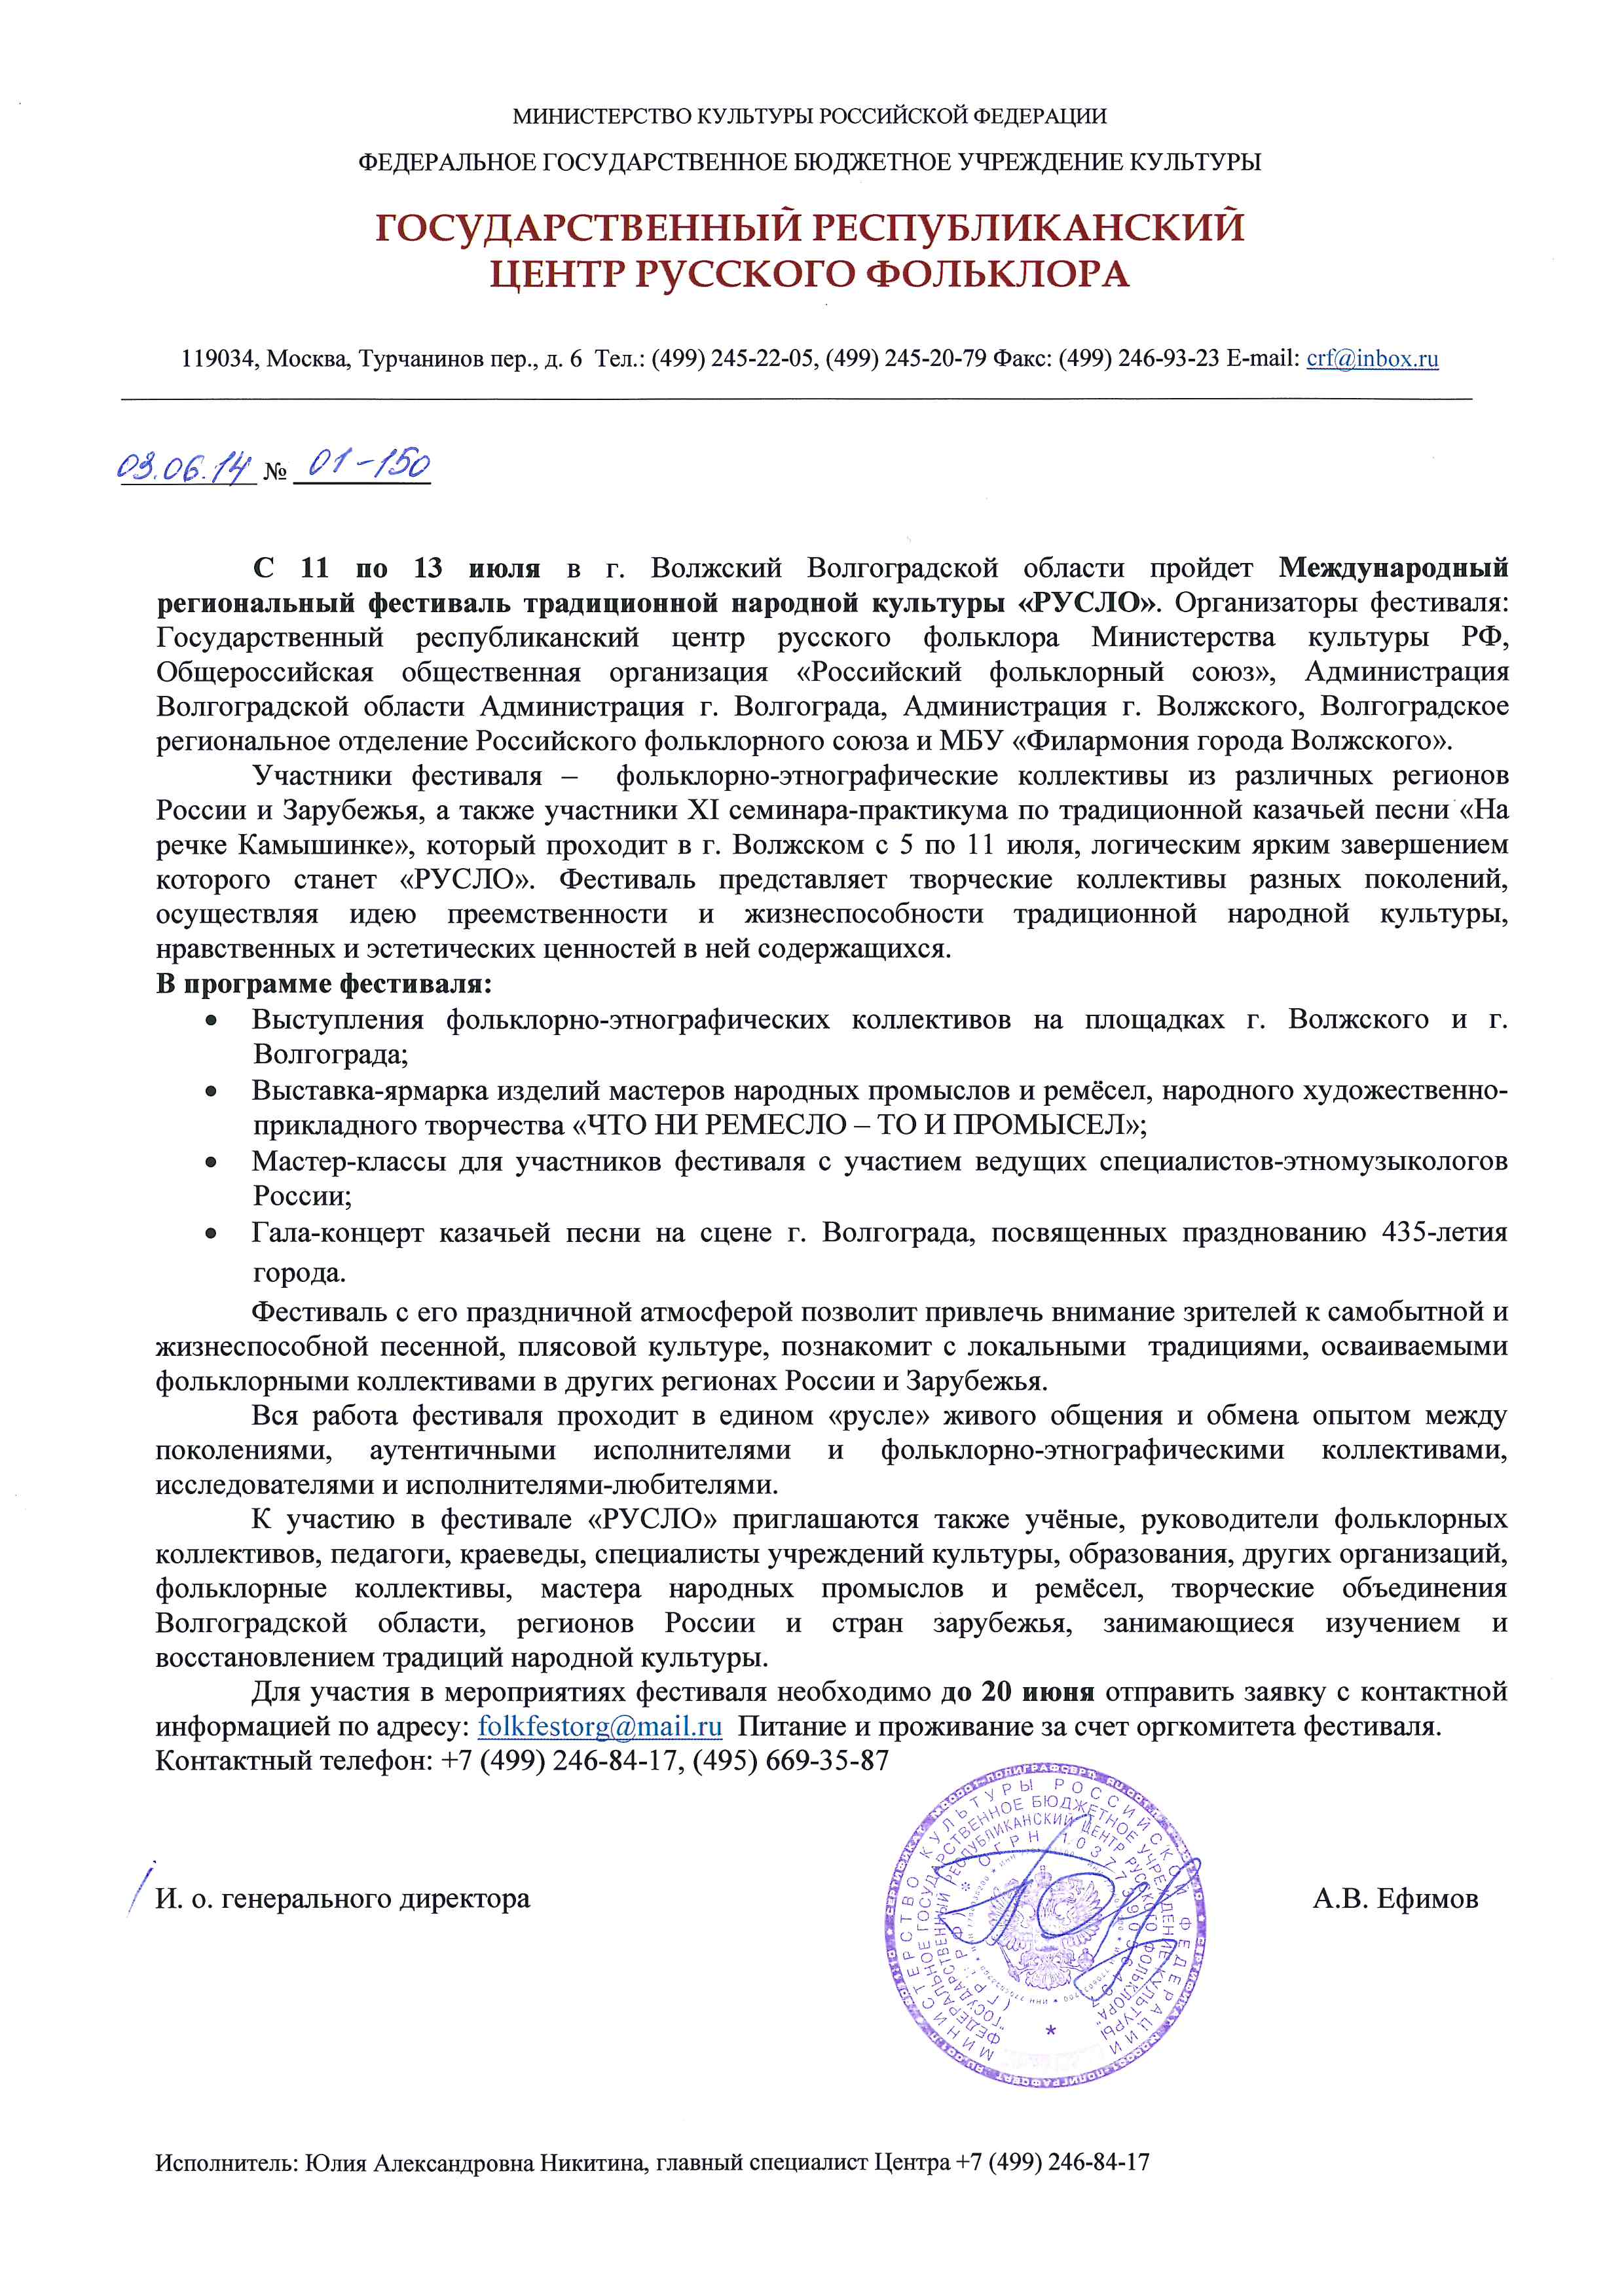 Официальное письмо-приглашение на фестиваль “Русло” – Центр русского  фольклора